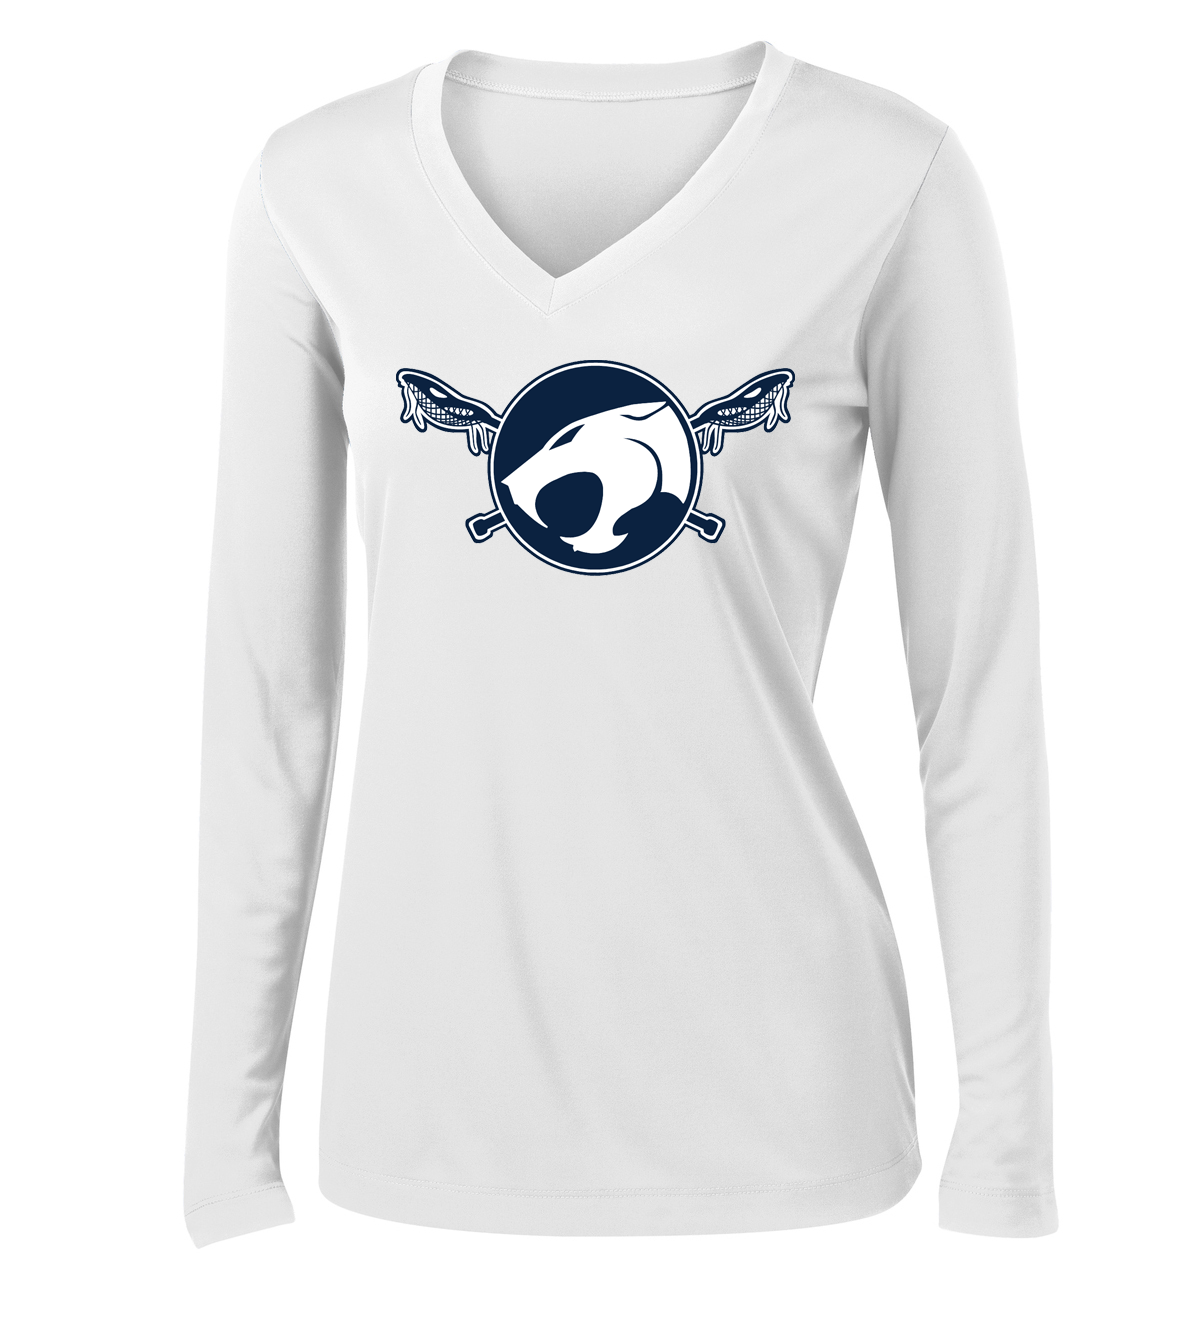 Reitz Lacrosse Women's White Long Sleeve Performance Shirt